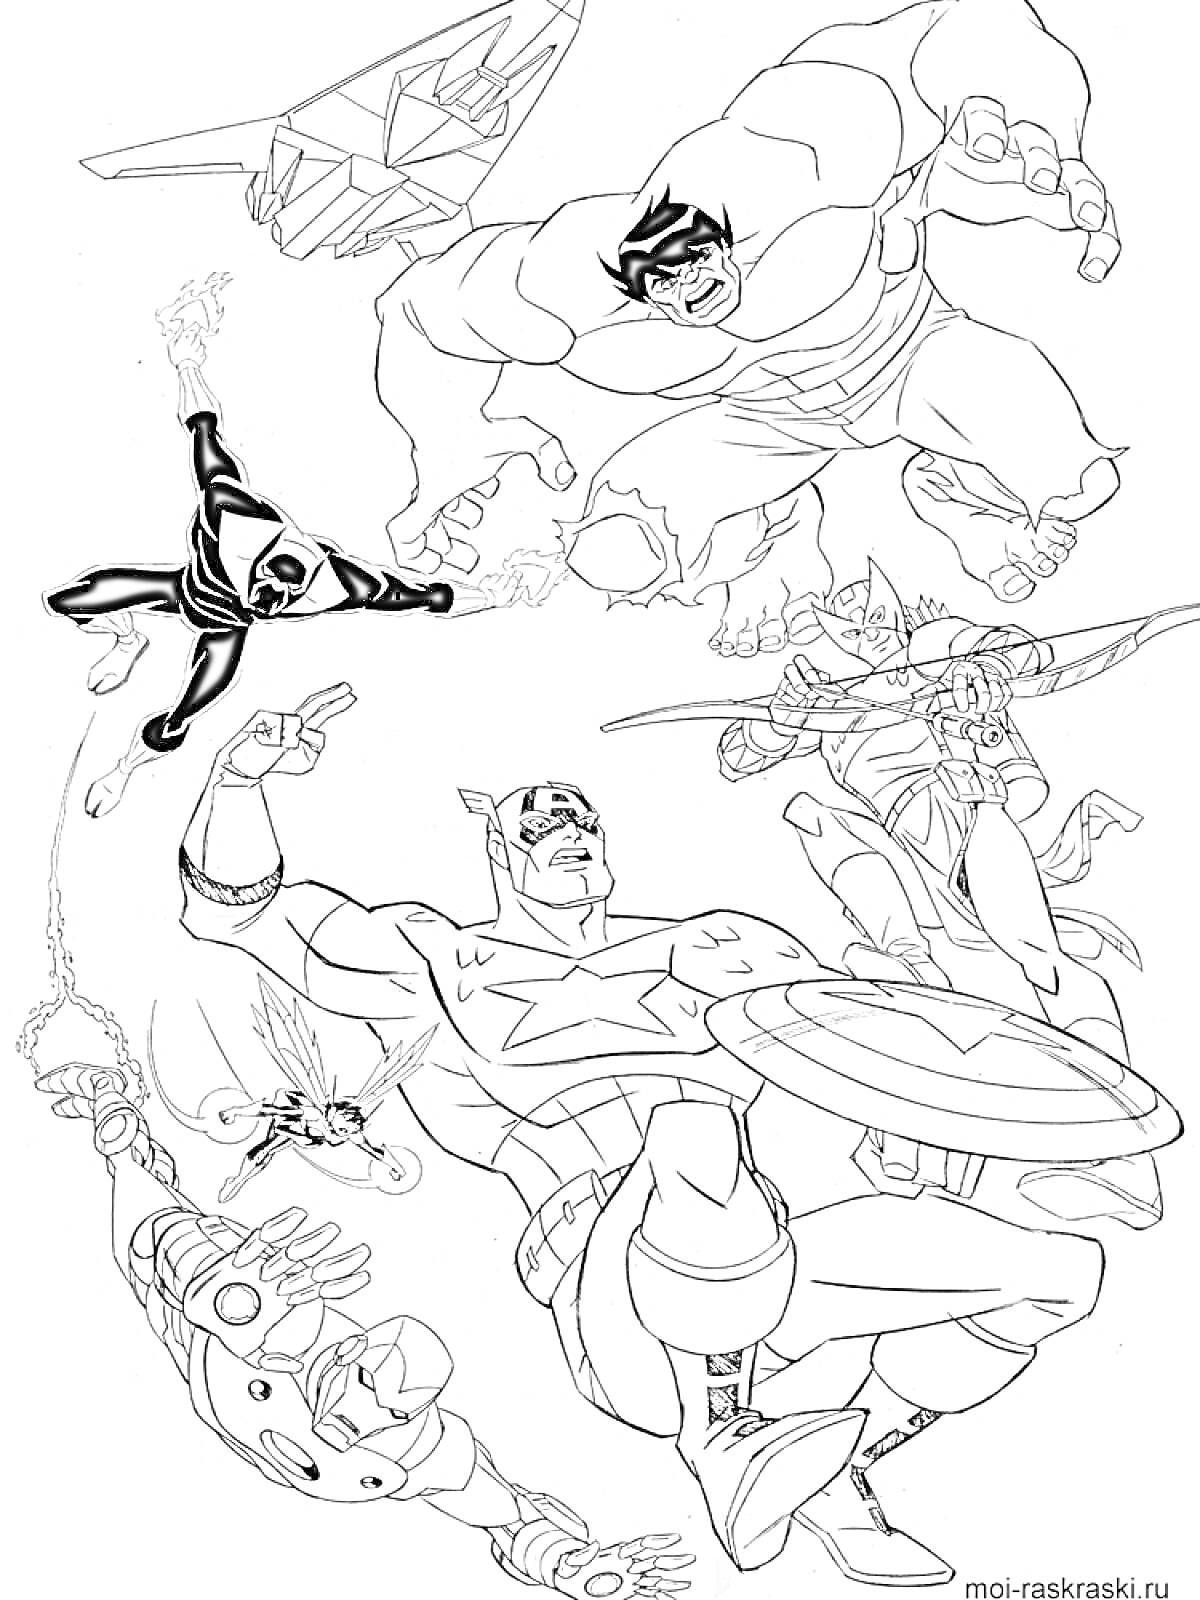 Раскраска Команда супергероев в действии (самолет, зеленый мускулистый персонаж, персонаж с паутинкой, персонаж в бронекостюме с турбонаплечником, летающий персонаж в шлеме с крыльями, персонаж с блестящим щитом)